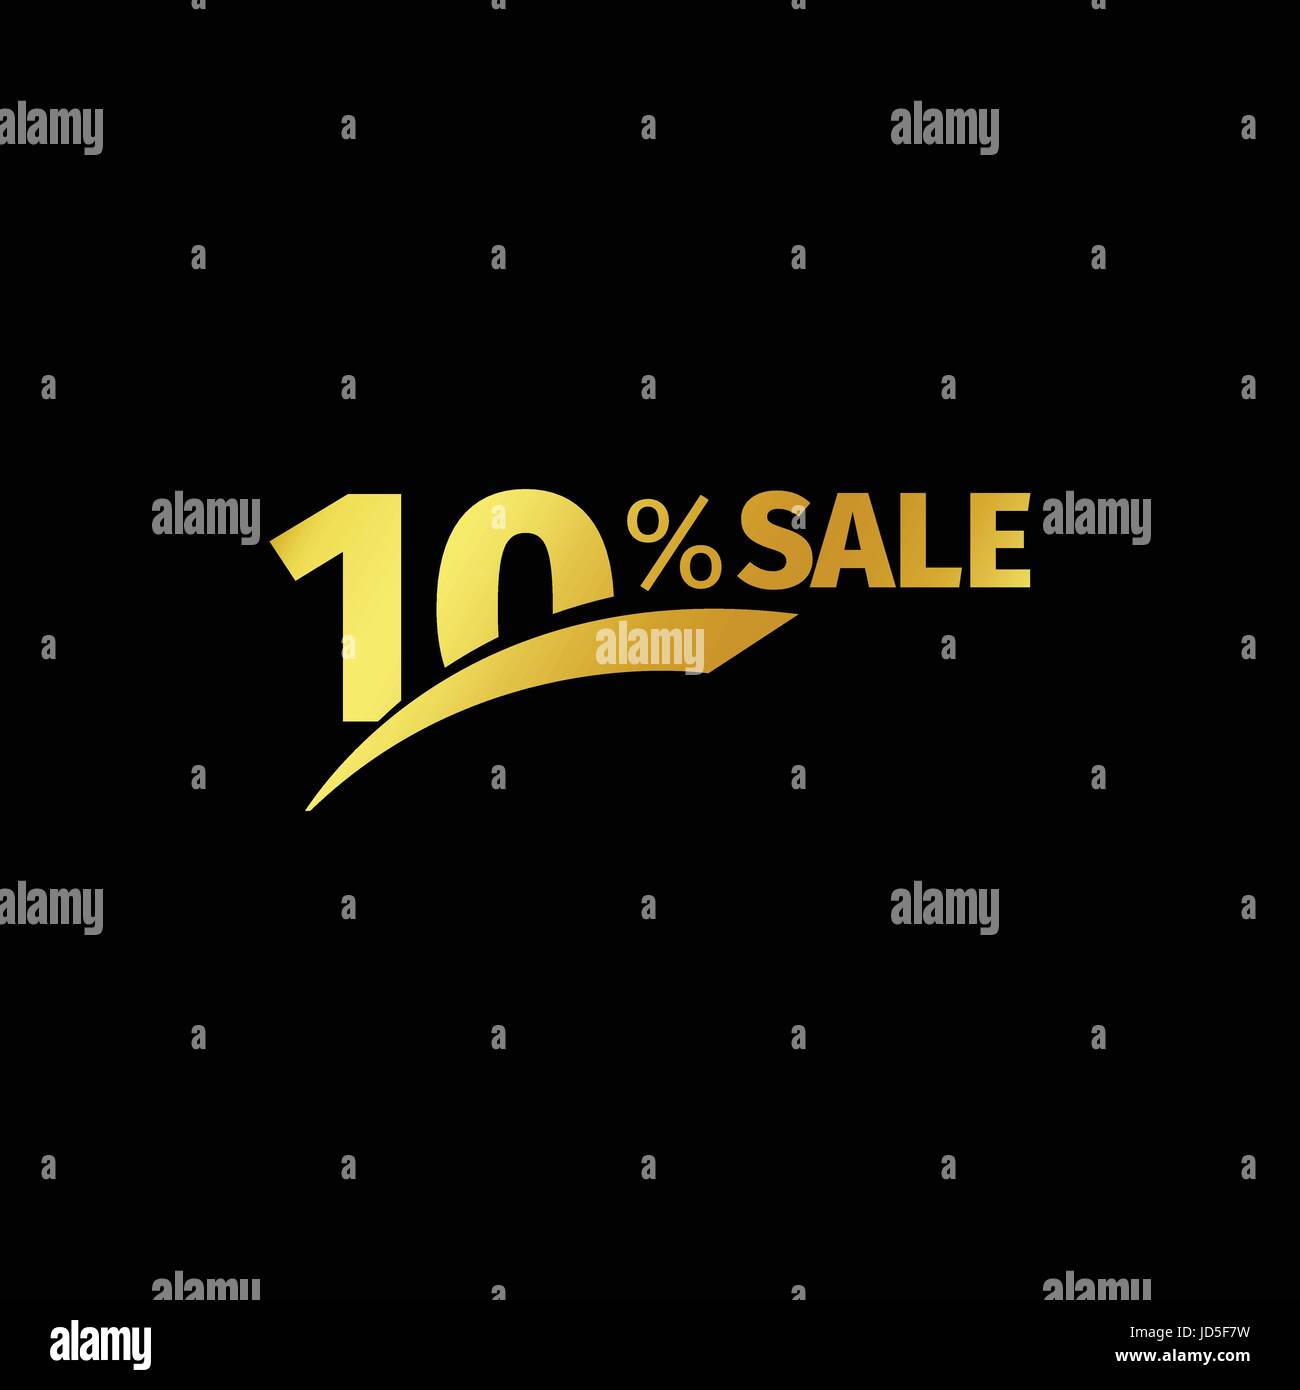 Schwarzer Banner Rabatt kaufen 10 Prozent Verkauf Vektor gold-Logo auf schwarzem Hintergrund. Promotion Business-Angebot für Käufer-Logo. Zehn Prozent Stock Vektor